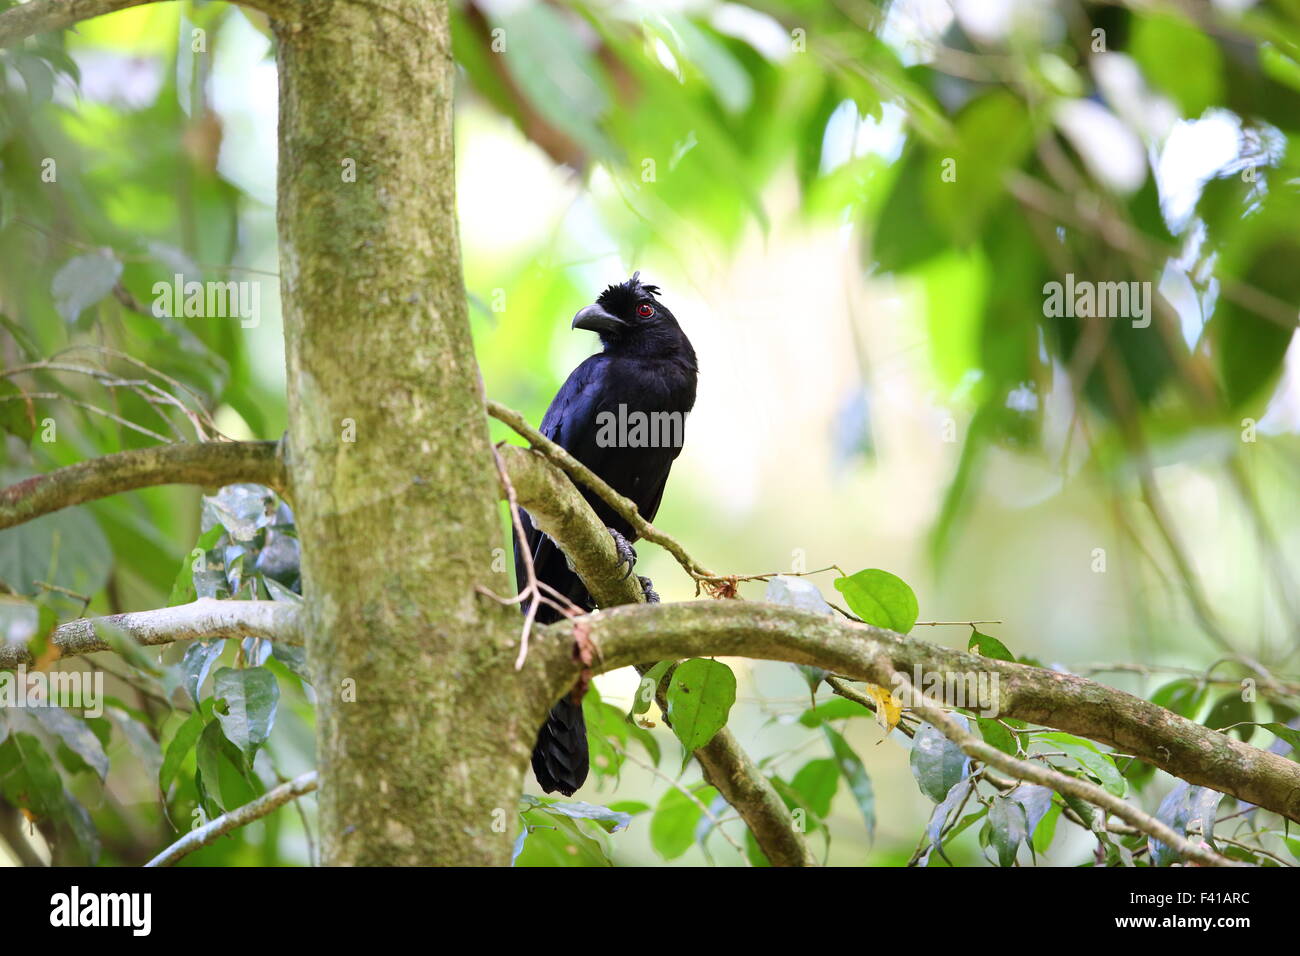 Bornean black magpie (Platysmurus leucopterus aterrimus) in Borneo Stock Photo